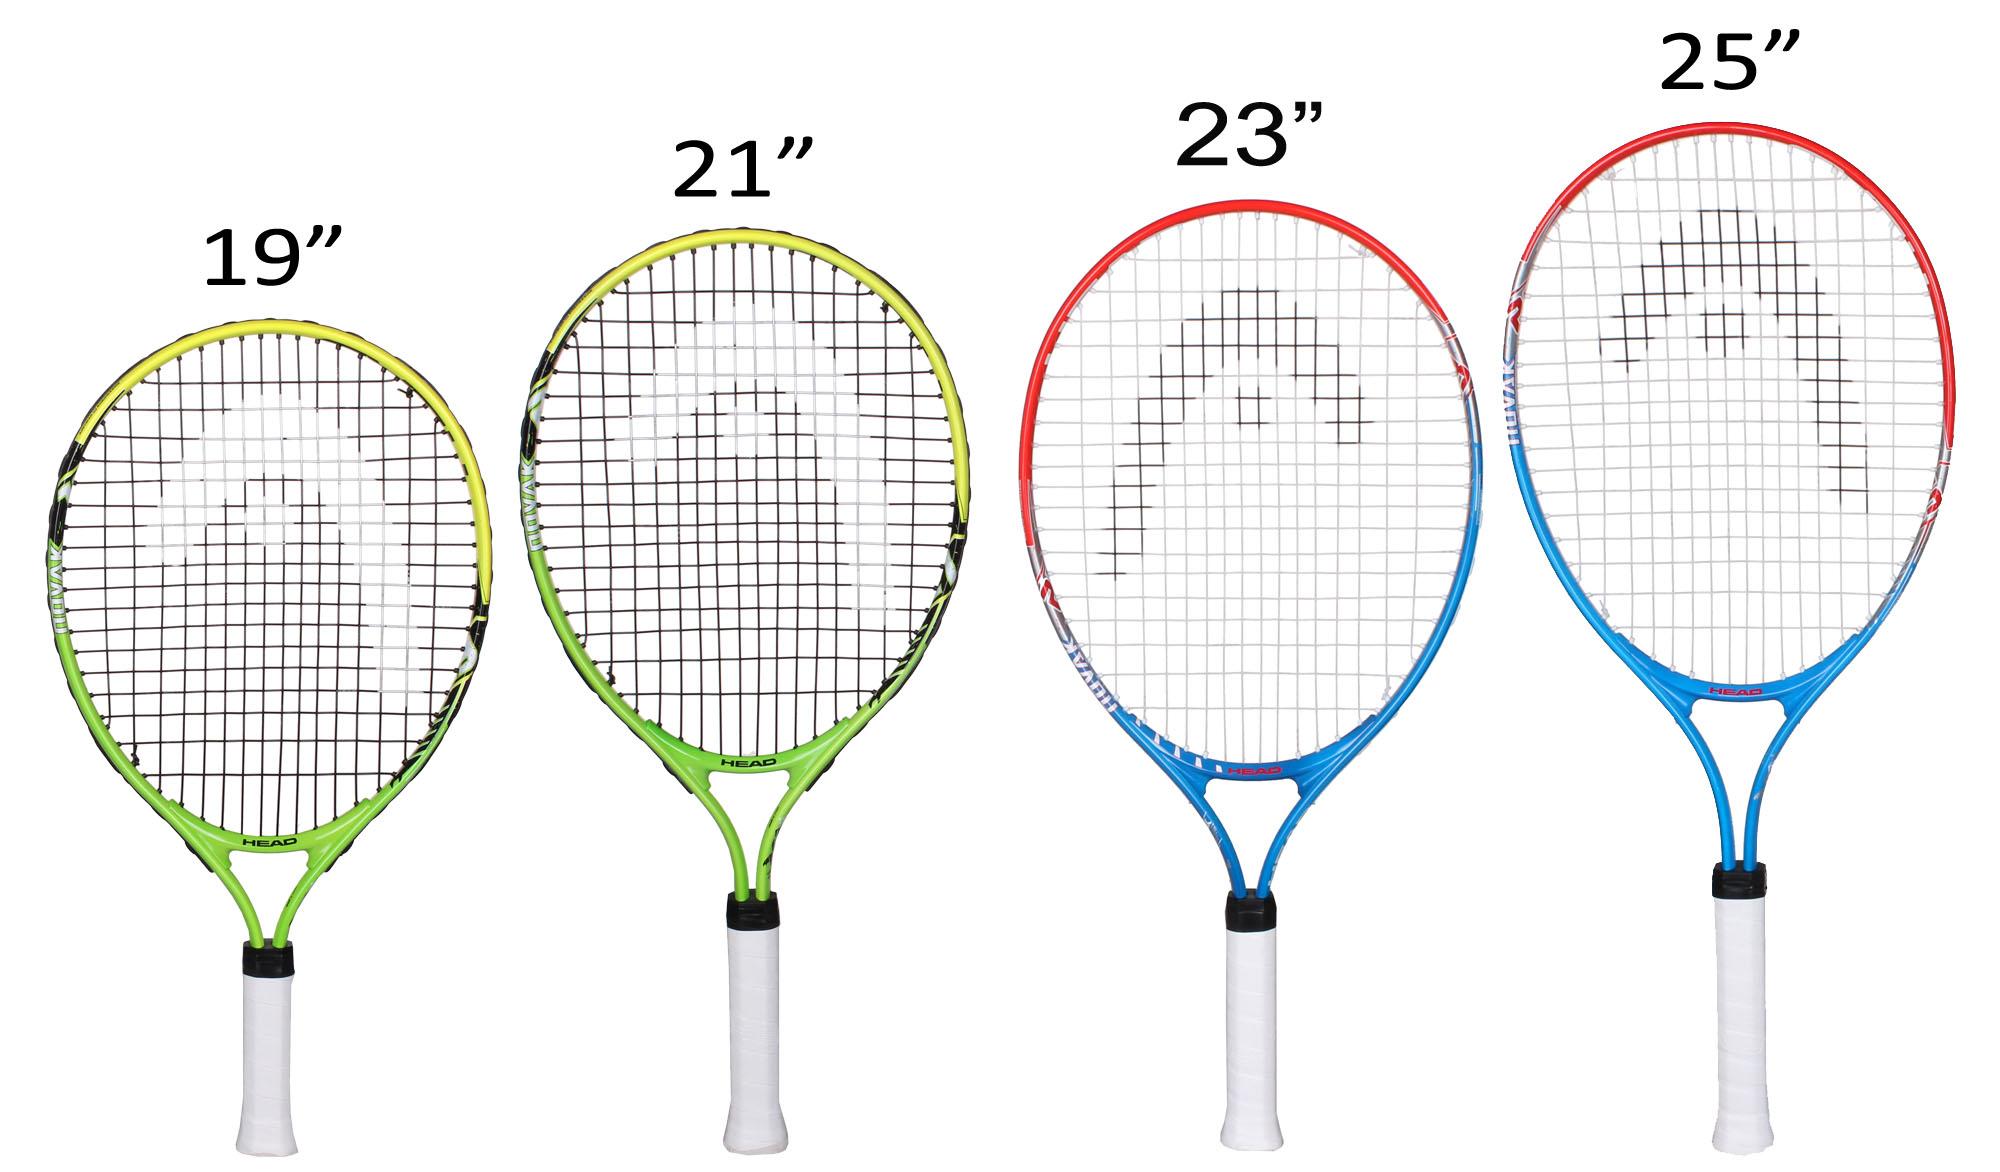 Ракетка для большого тенниса взрослая. Размеры теннисной ракетки для большого тенниса 23. Ракетка для большого тенниса Размеры 26. Размер ручки ракетки для большого тенниса 3 7/8. Ракетка для большого тенниса head таблица размеров.